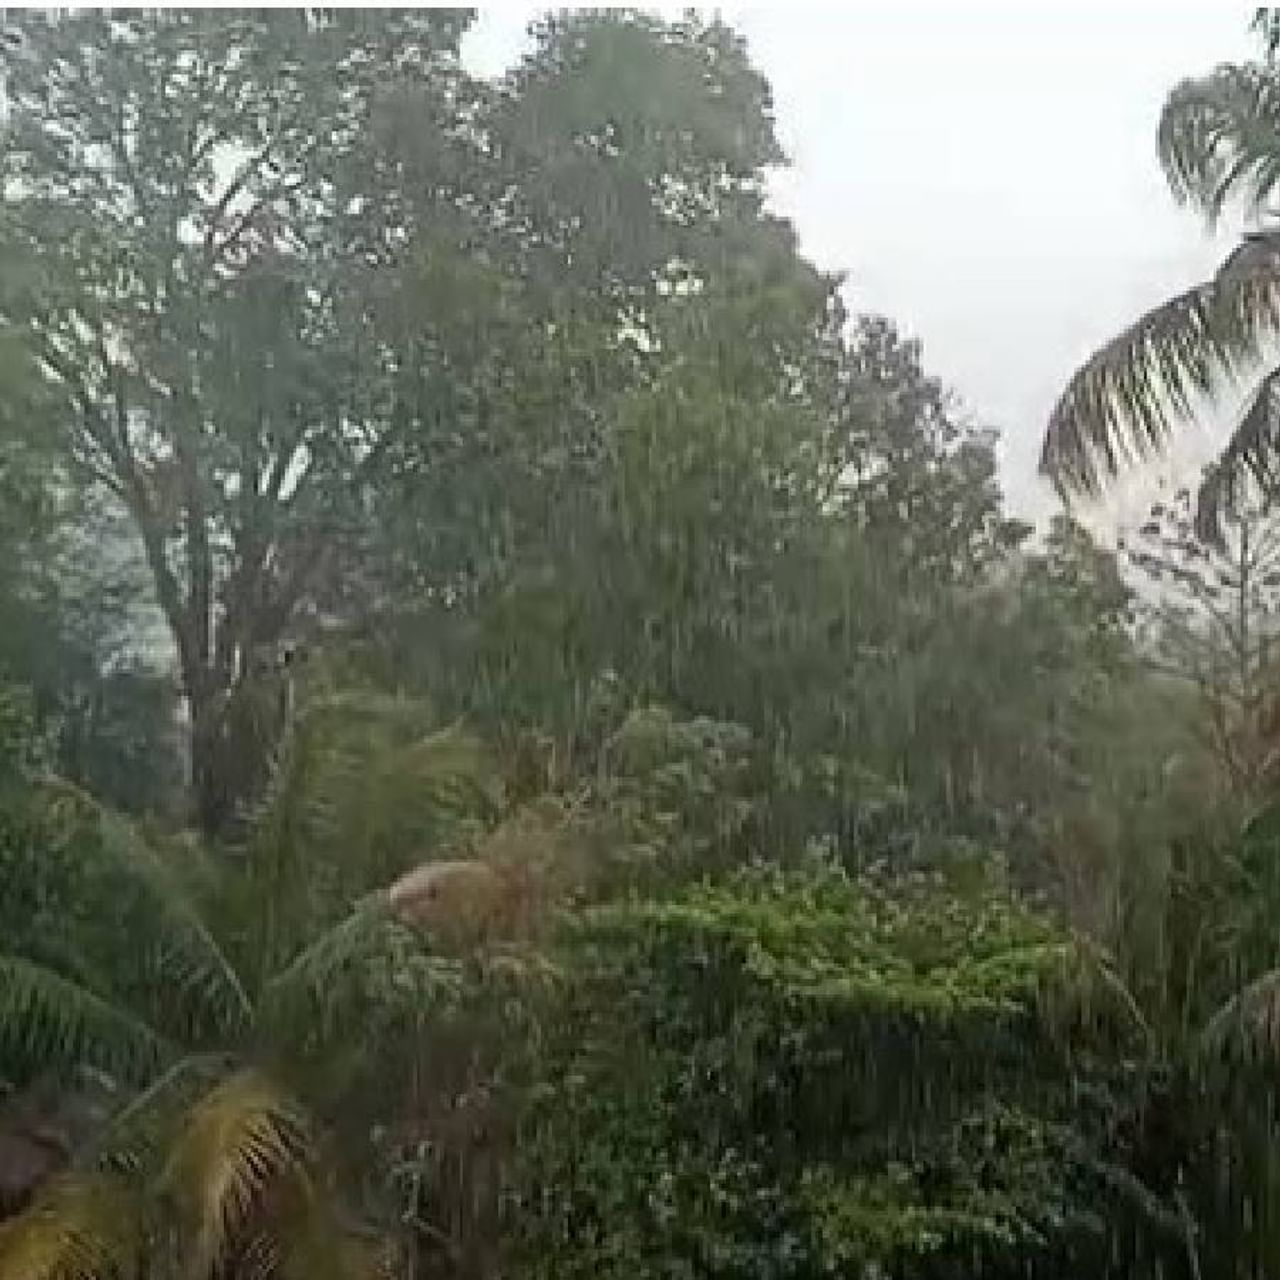  दक्षिण रत्नागिरीत पुन्हा अवकाळी पाऊस तडाखा बसला आहे.  पाचल गावात अवकाळी पावसाच्या सरी कोसळल्या आहेत.  जिल्ह्यात अनेक भागात दुपारनंतर तापमानात वाढ आठवडाभर अवकाळी पावसाचा हवामान खात्याचा अंदाज व्यक्त केला आहे. 
